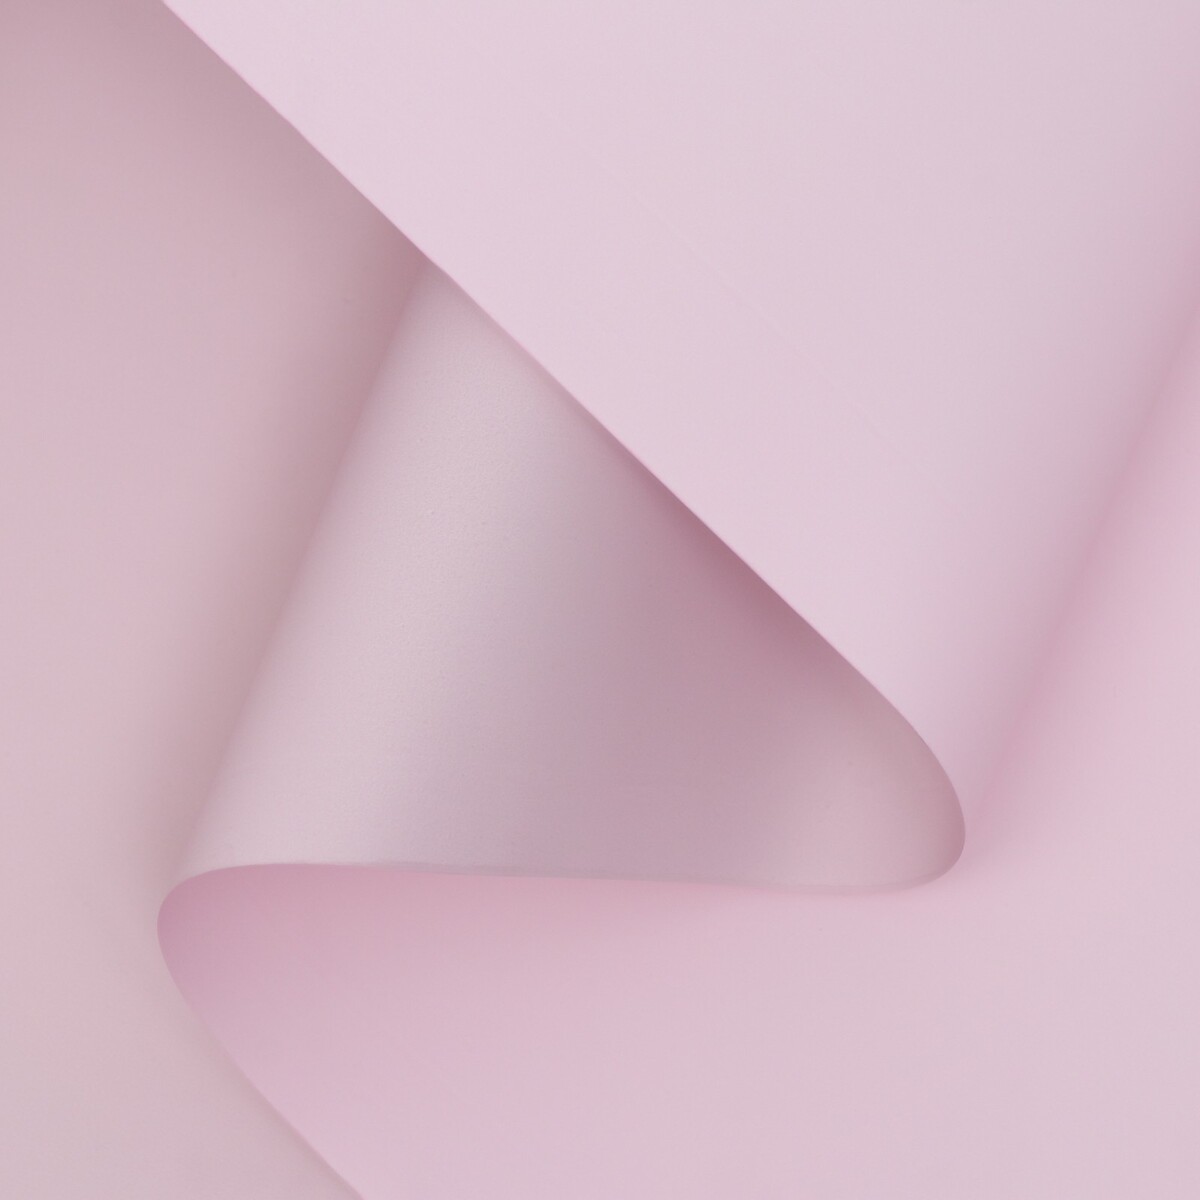 Пленка матовая двухсторонняя , пастельная серия, 65 мкм пастельный, розовый, 0,5 x 10 м пленка для ов матовая пузыри 57х57см кремовый св розовый 65 мкм